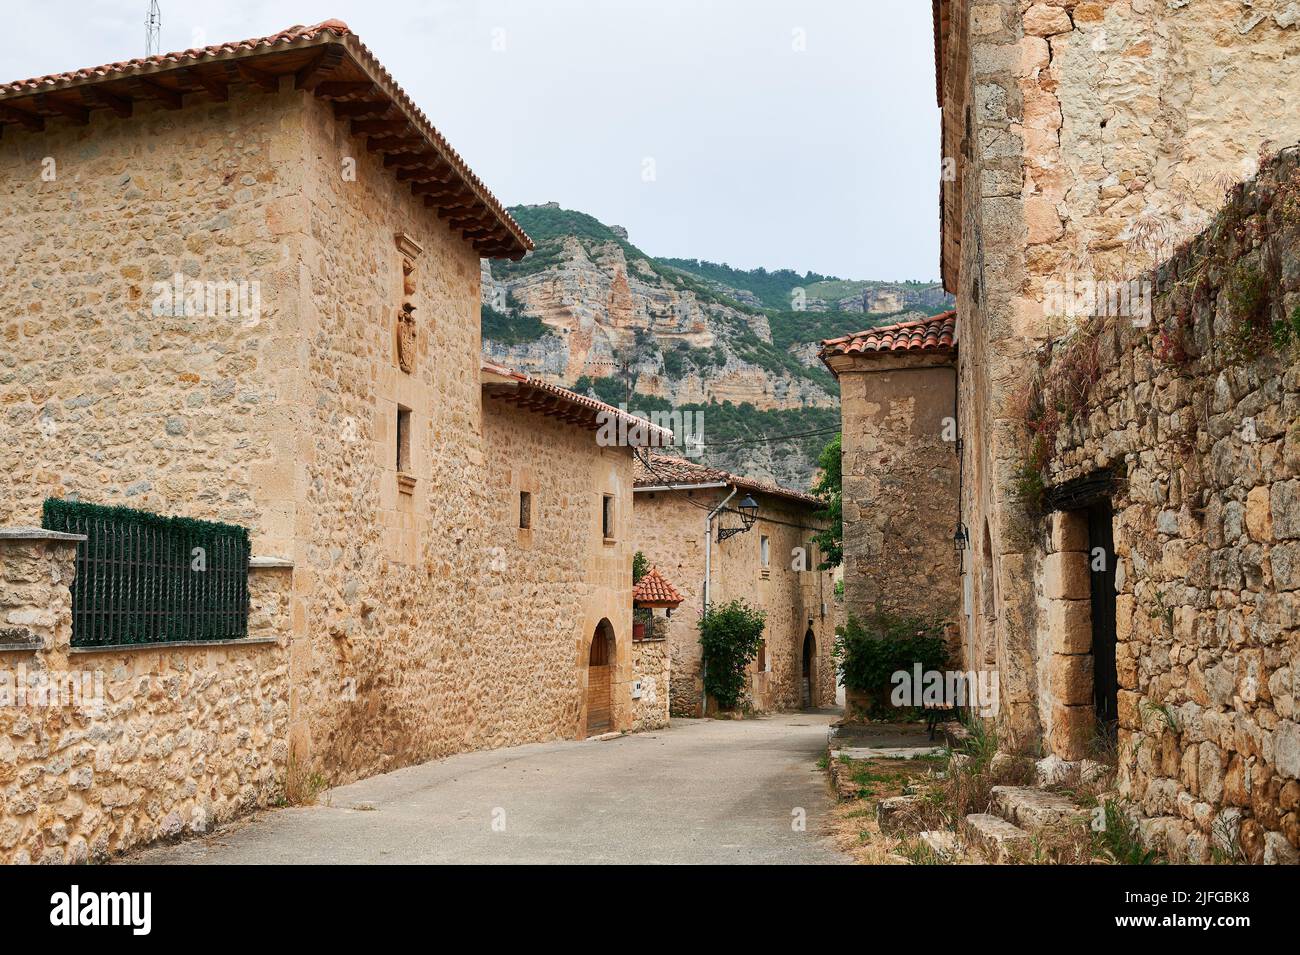 Little town of Pesquera de Ebro, Burgos, Spain Stock Photo